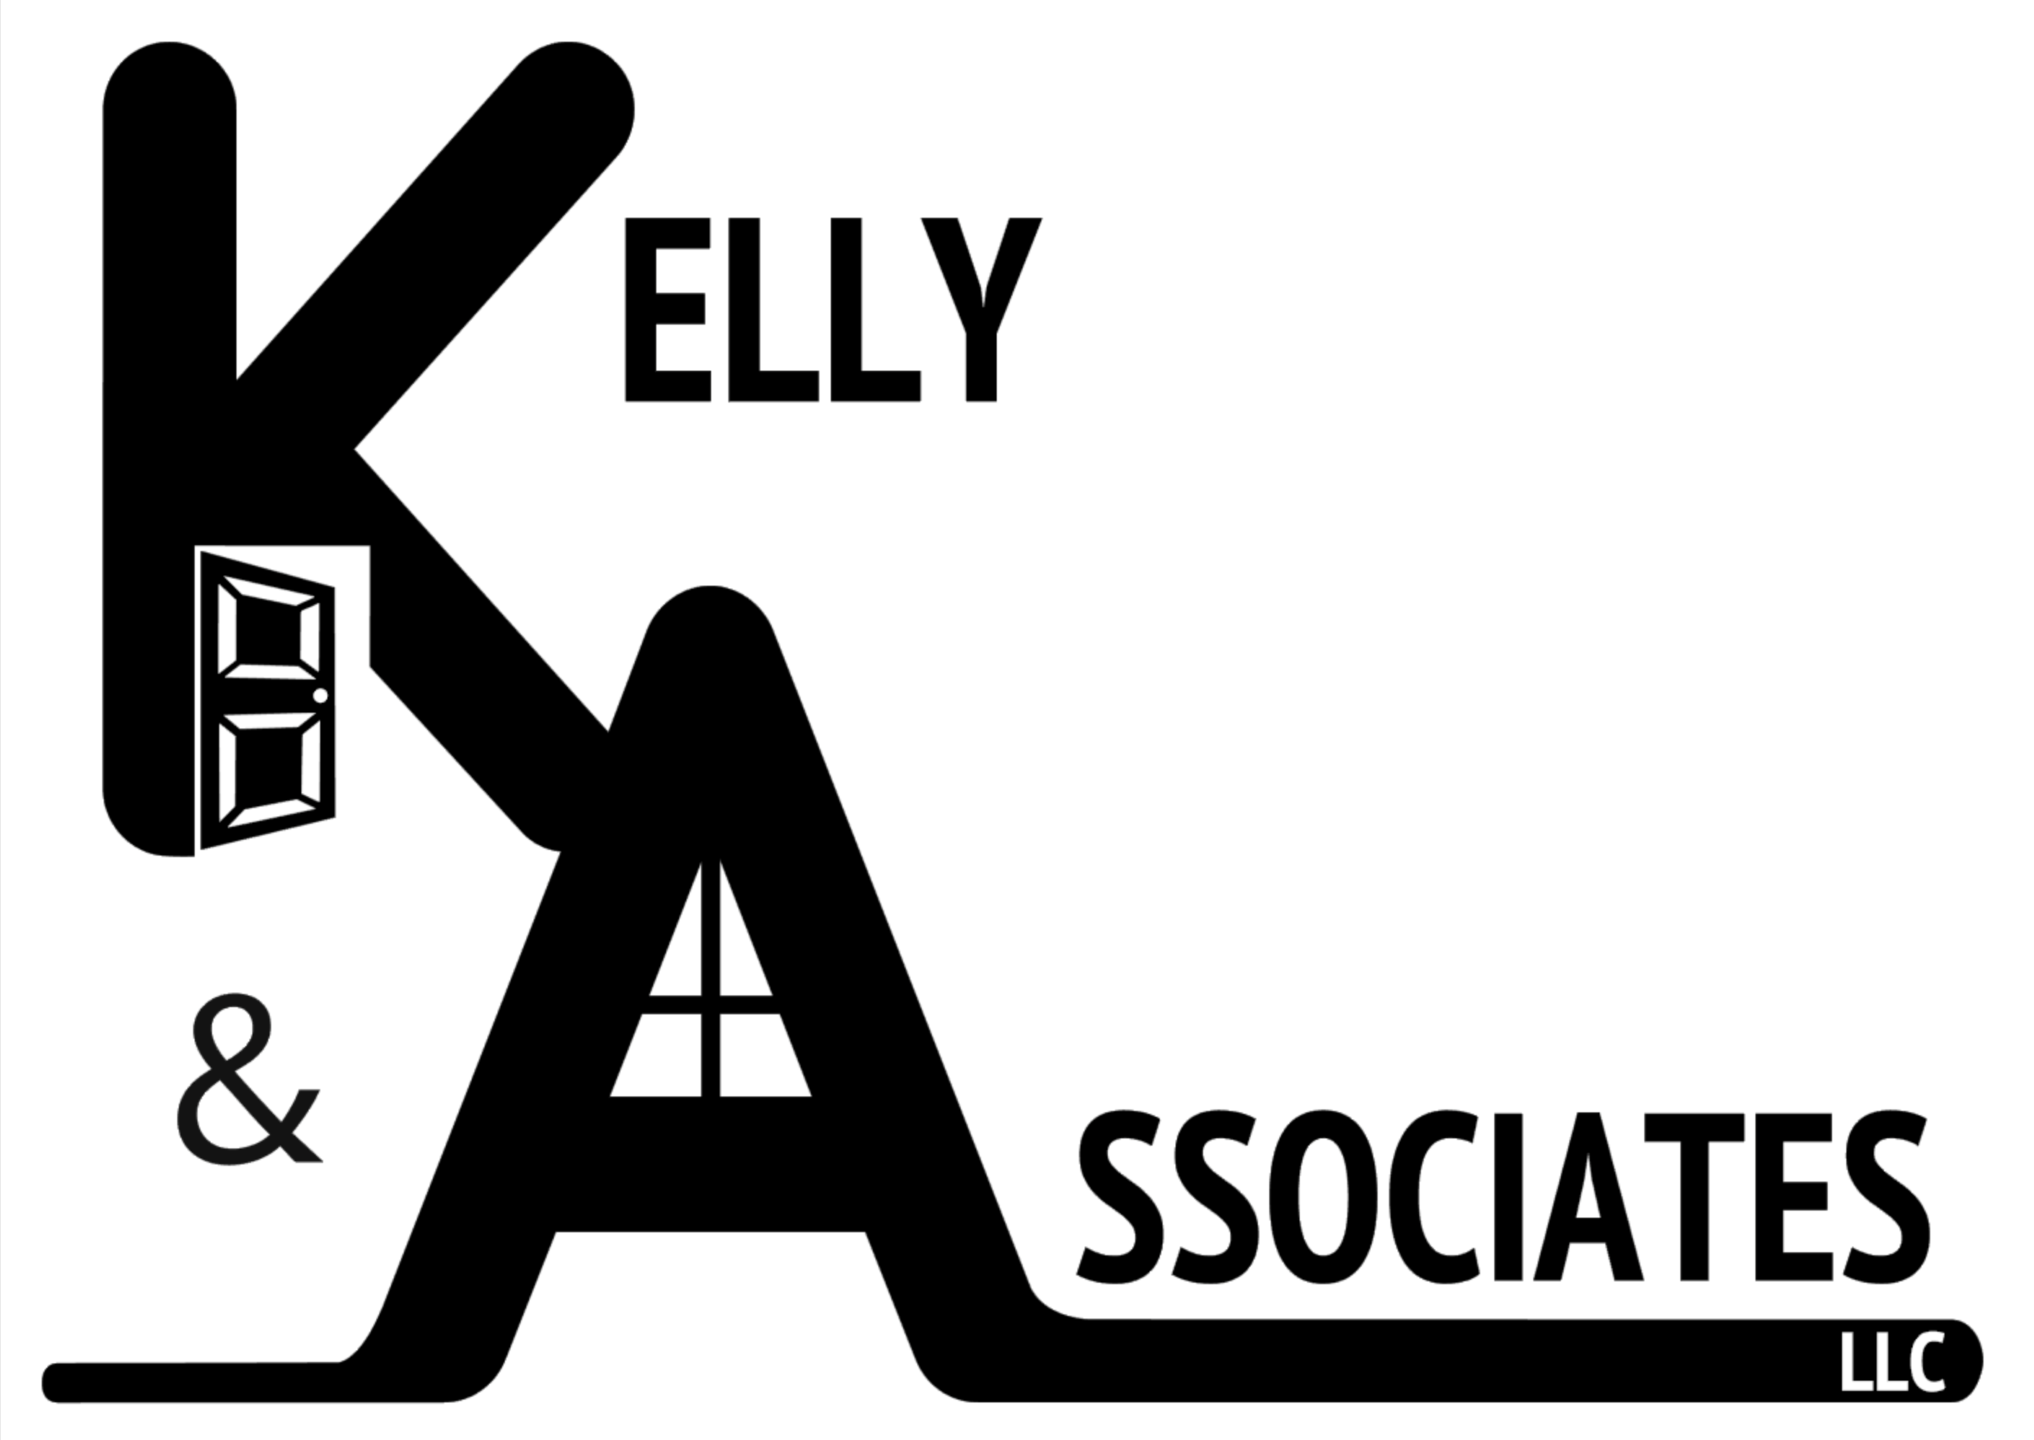 Kelly And Associates LLC Logo